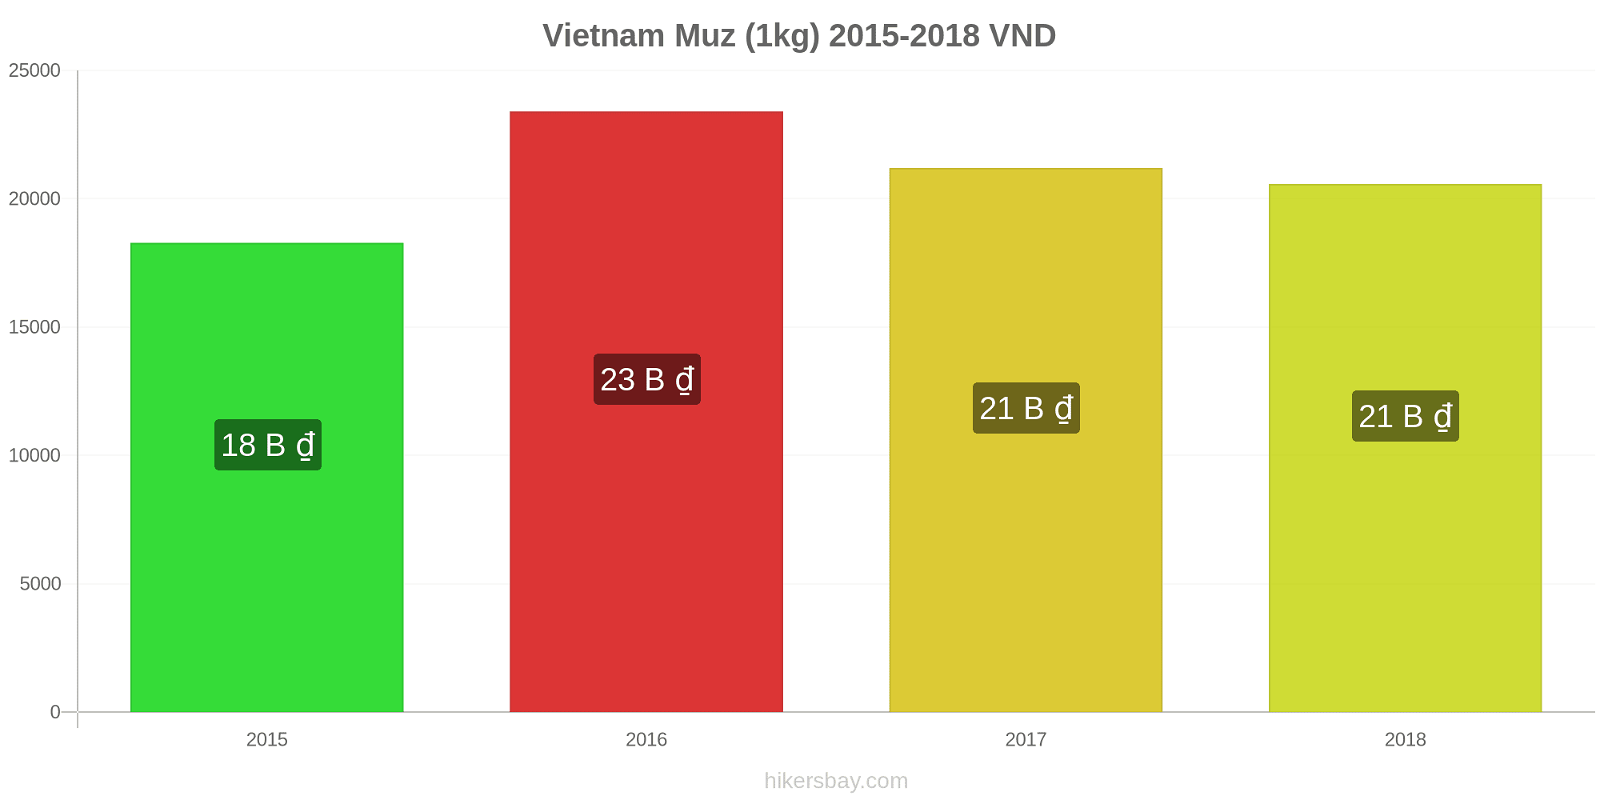 Vietnam fiyat değişiklikleri Muzlar (1kg) hikersbay.com